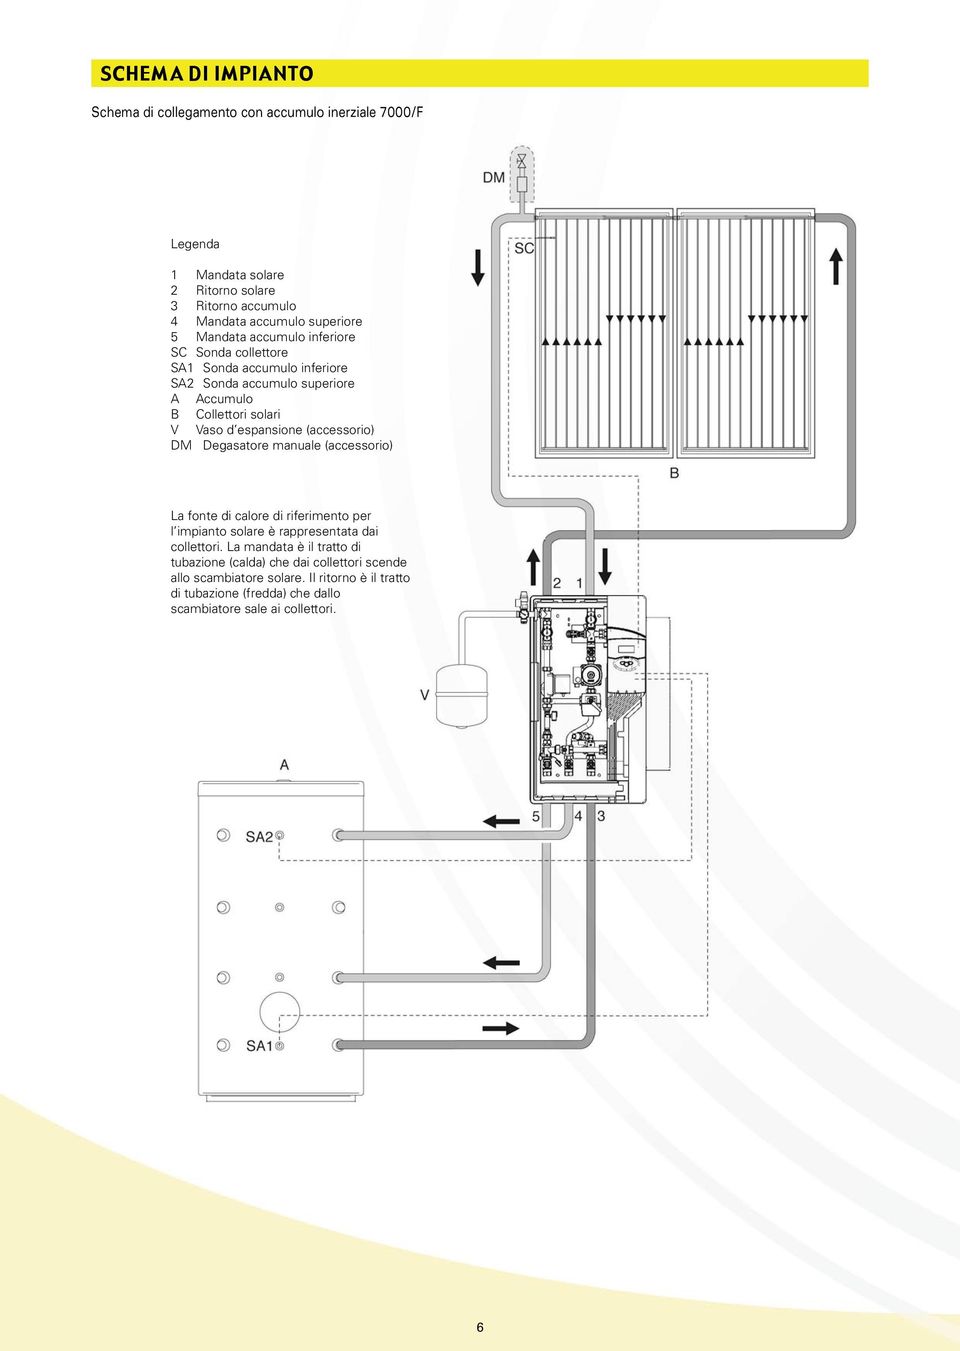 (accessorio) DM Degasatore manuale (accessorio) La fonte di calore di riferimento per l impianto solare è rappresentata dai collettori.